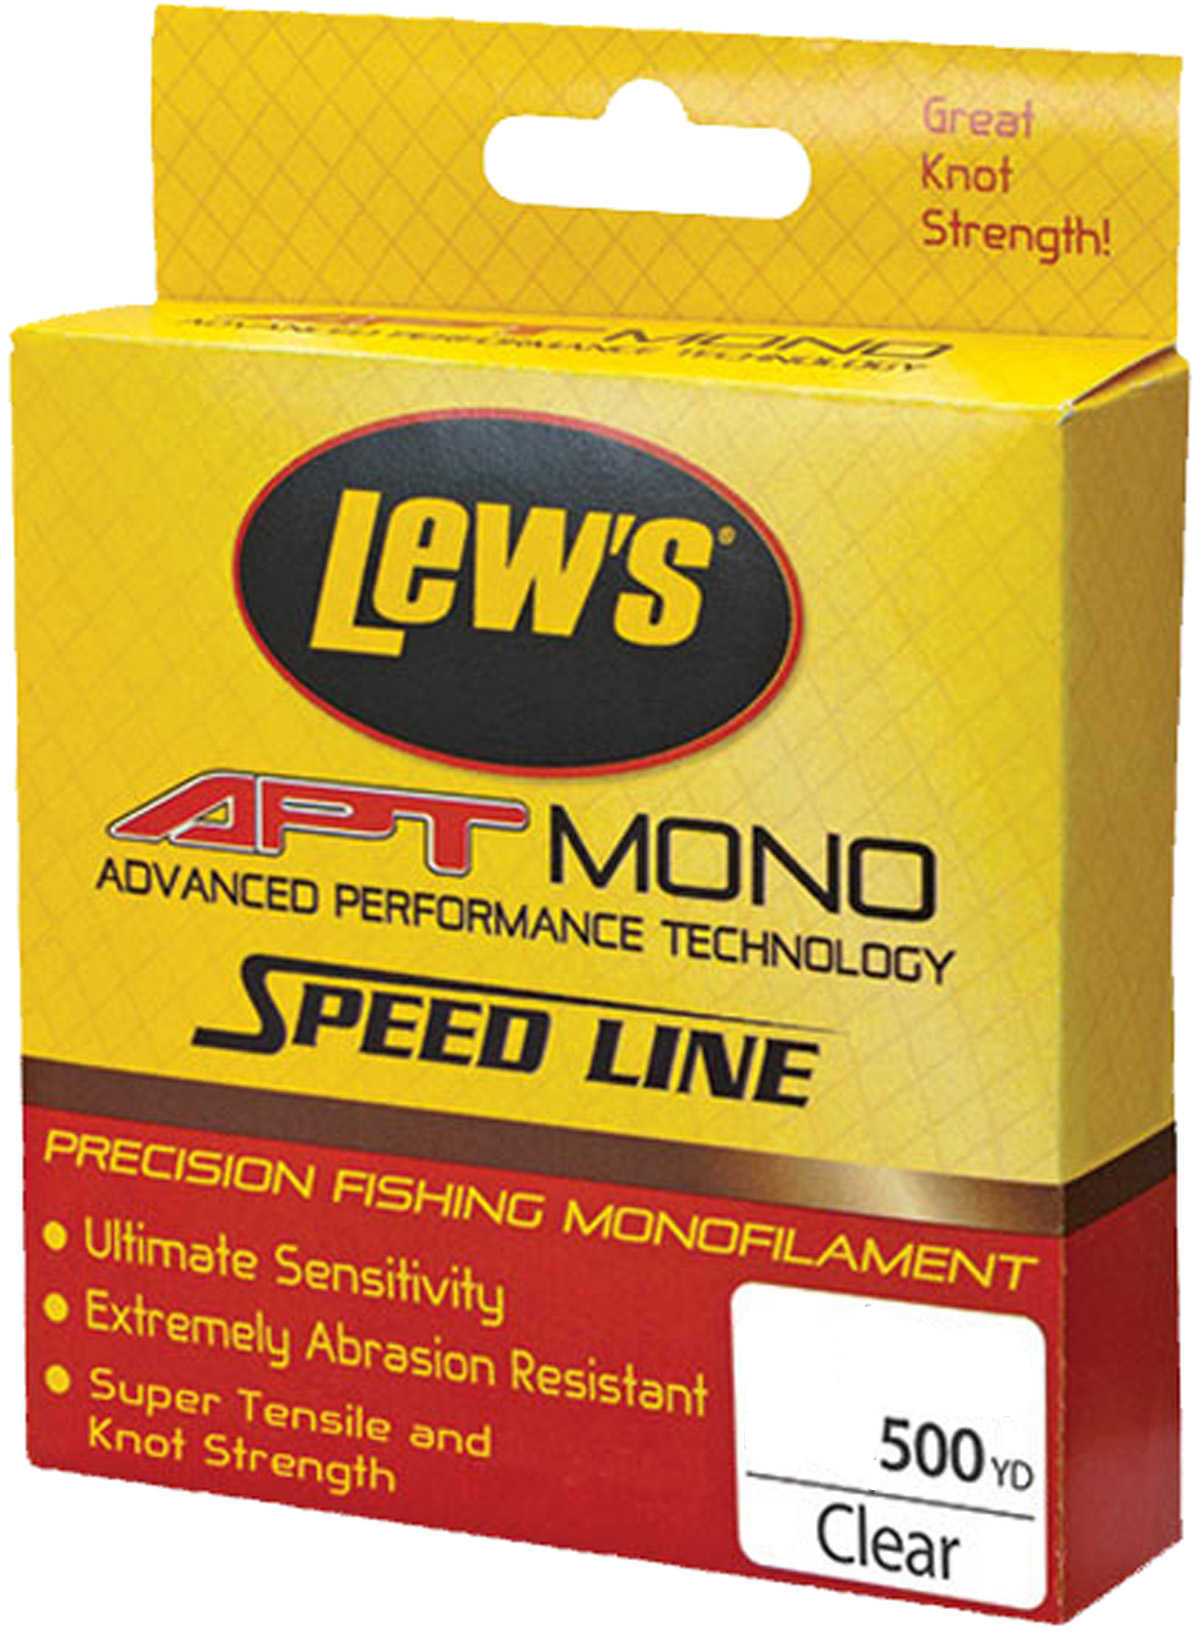 Lew's APT Monofilament Line, 25 Lb Test 500 Yards Md: LAPTM25CL